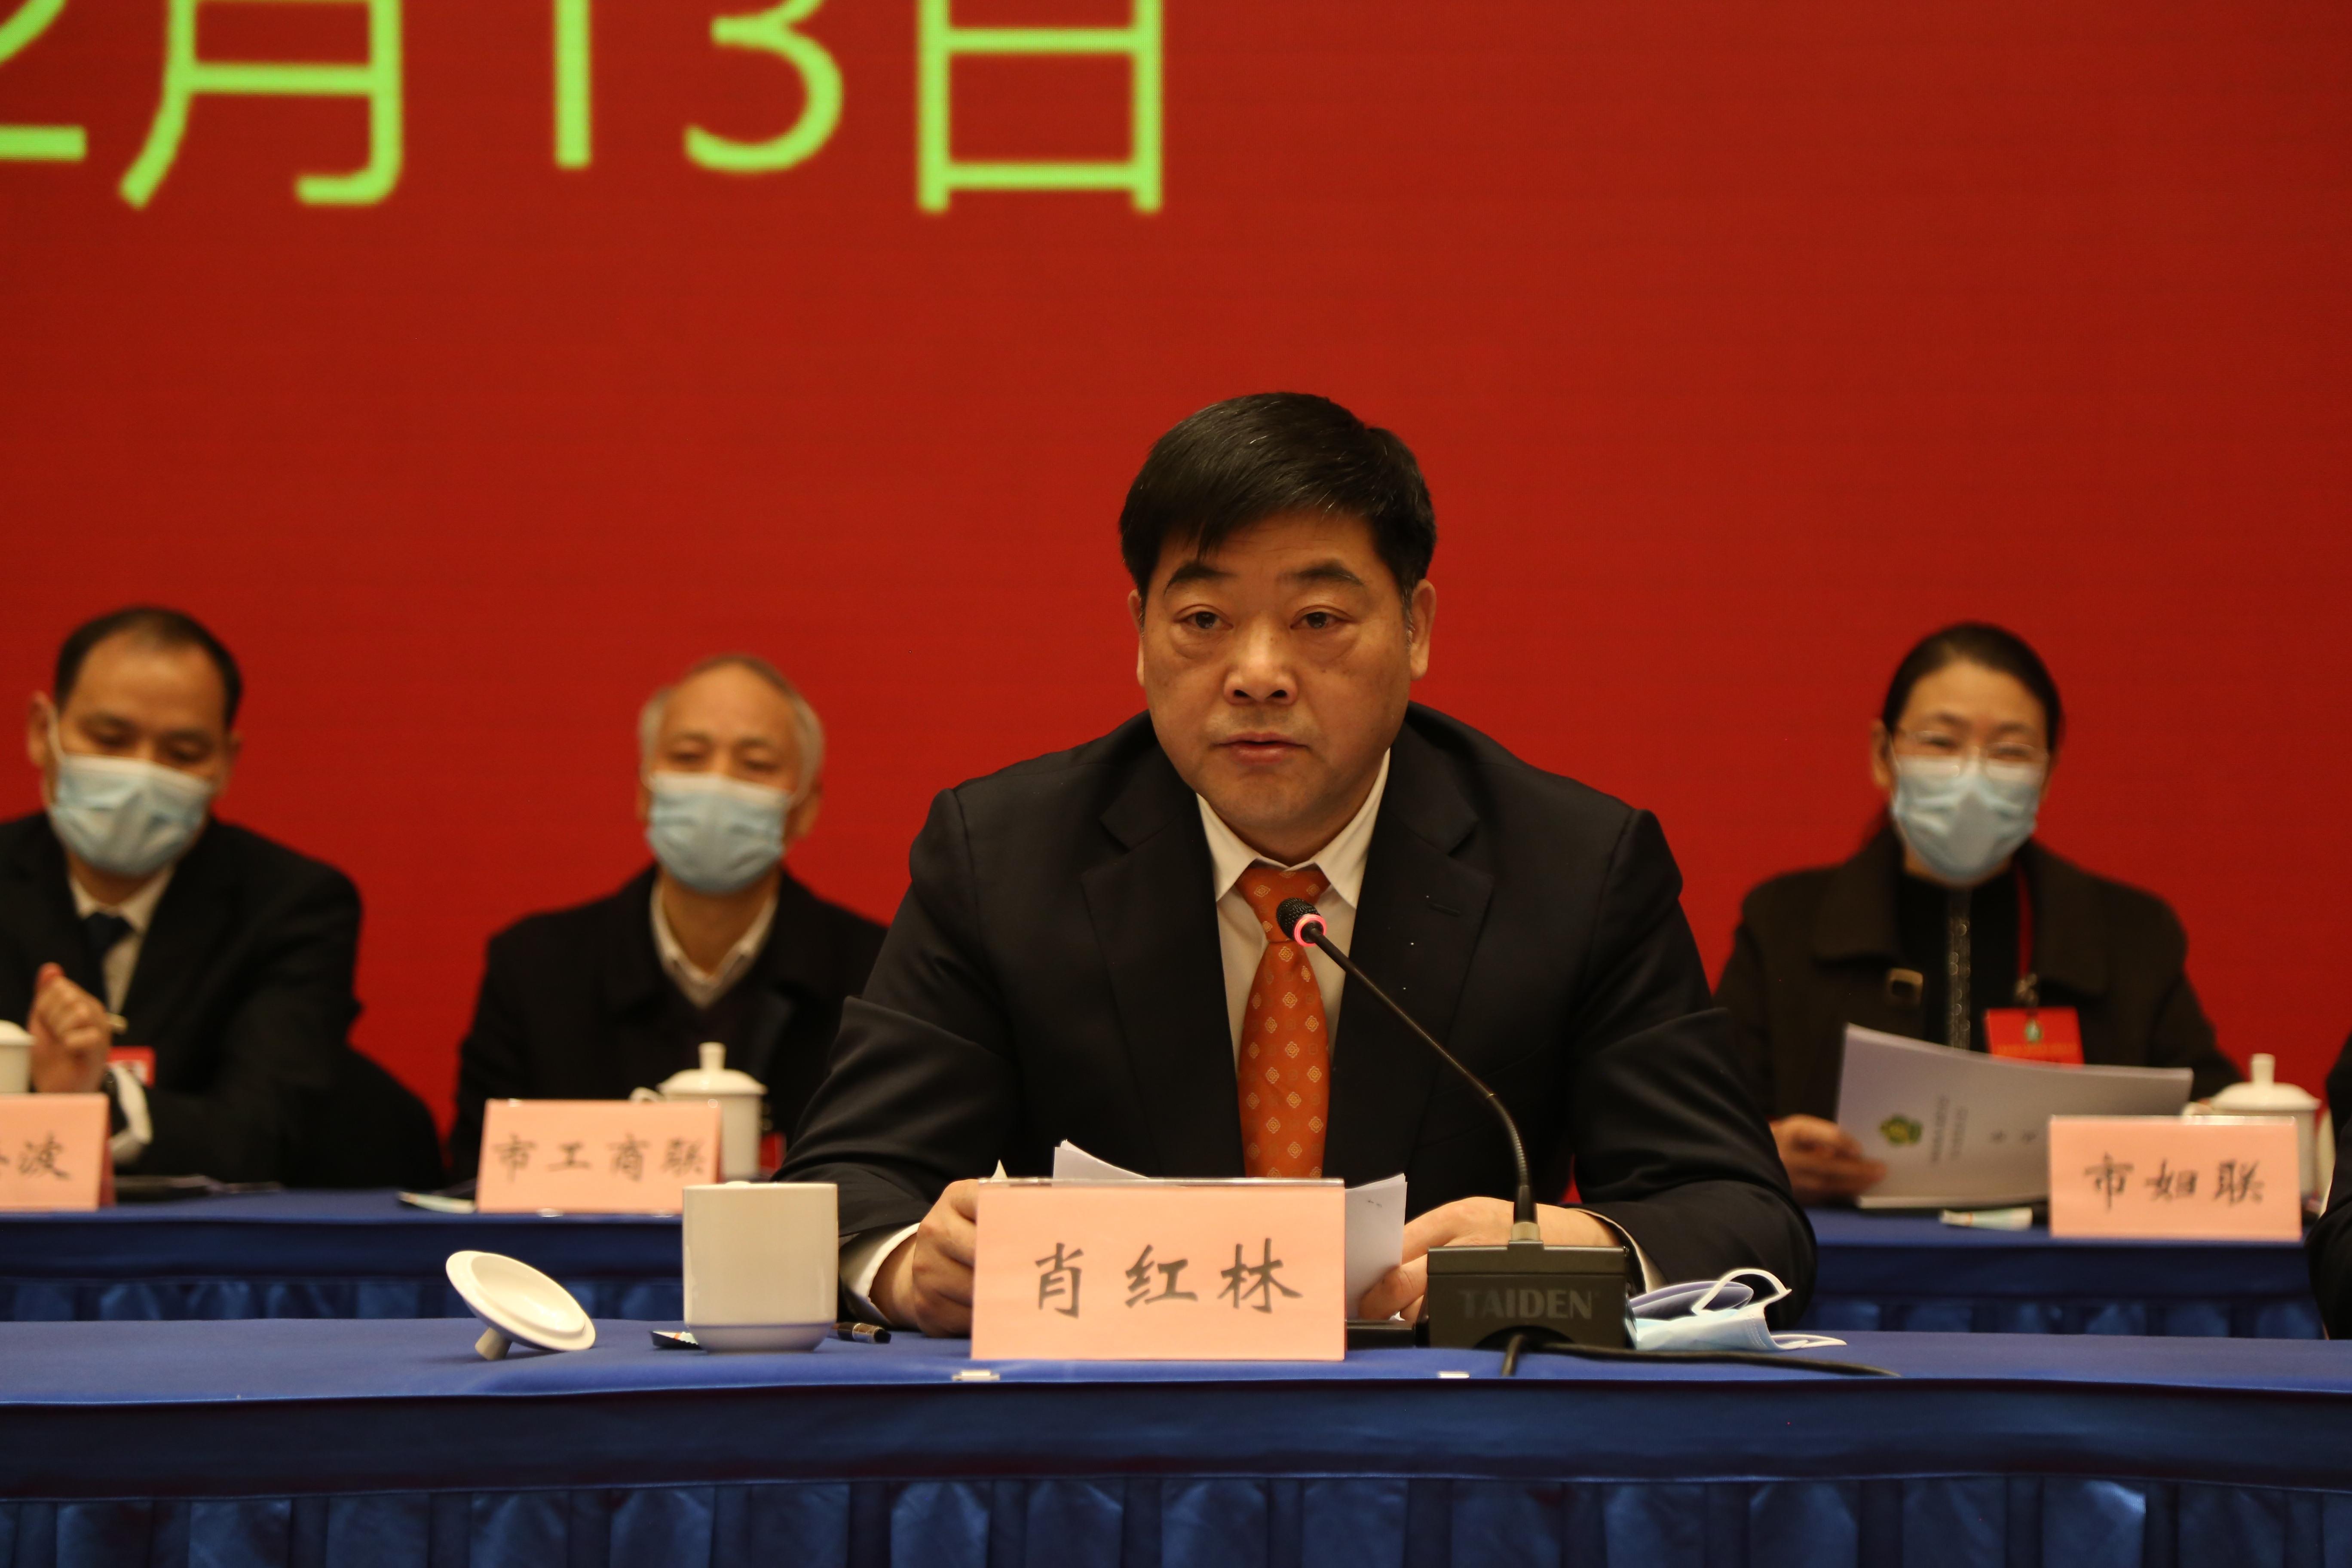 永州市残疾人联合会第六次代表大会开幕 肖红林 陈爱林出席并讲话